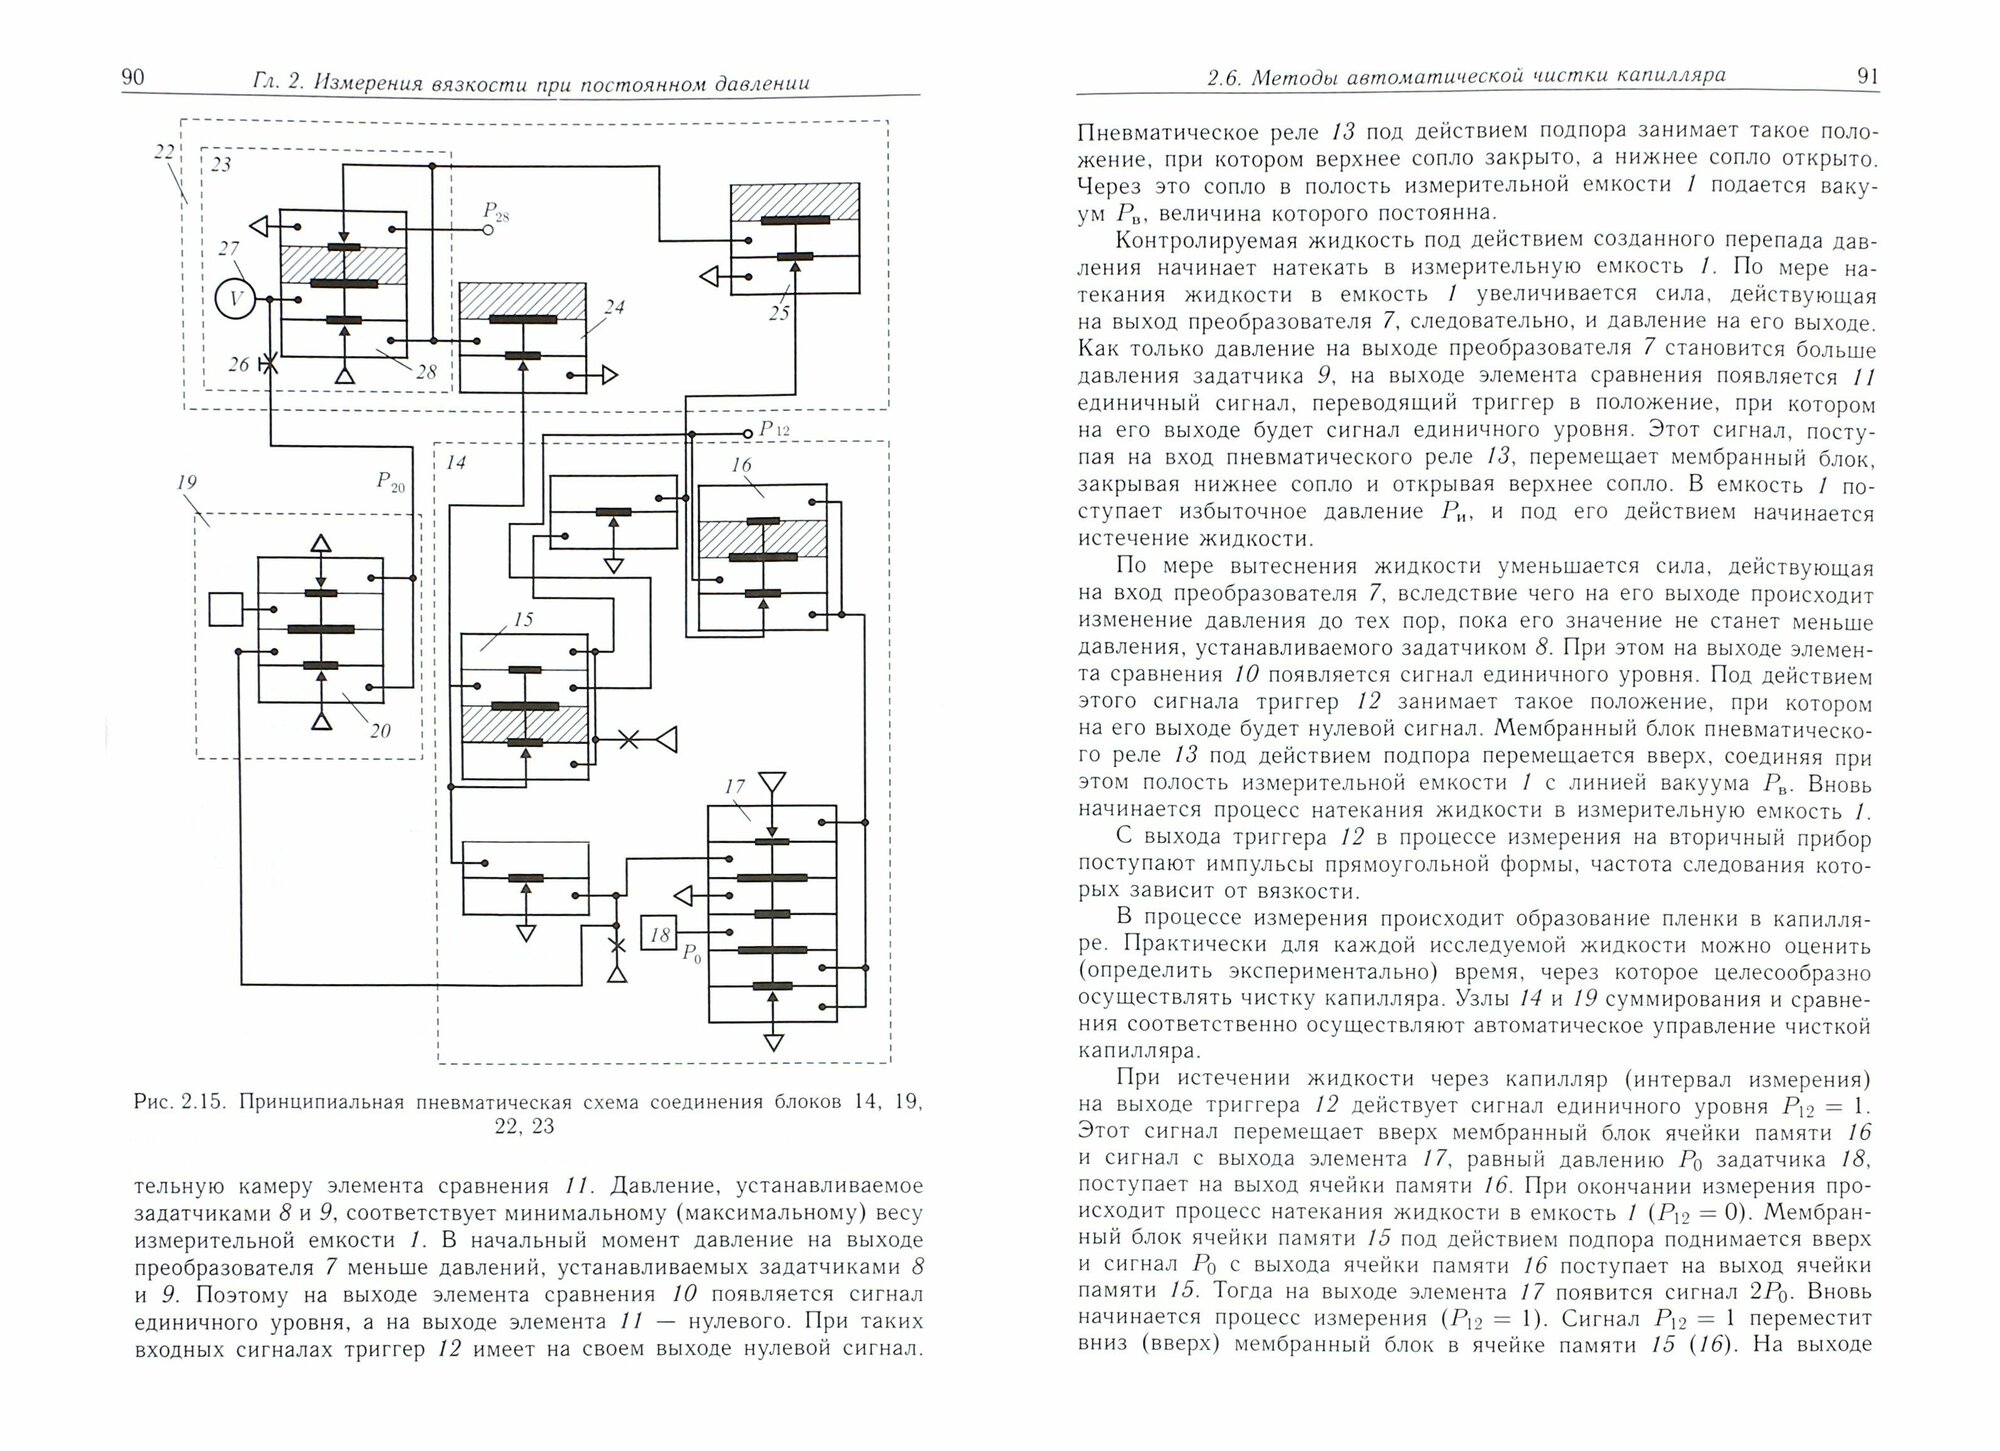 Аэрогидродинамические принципы реализации измерений в капиллярных вискозиметрах - фото №2